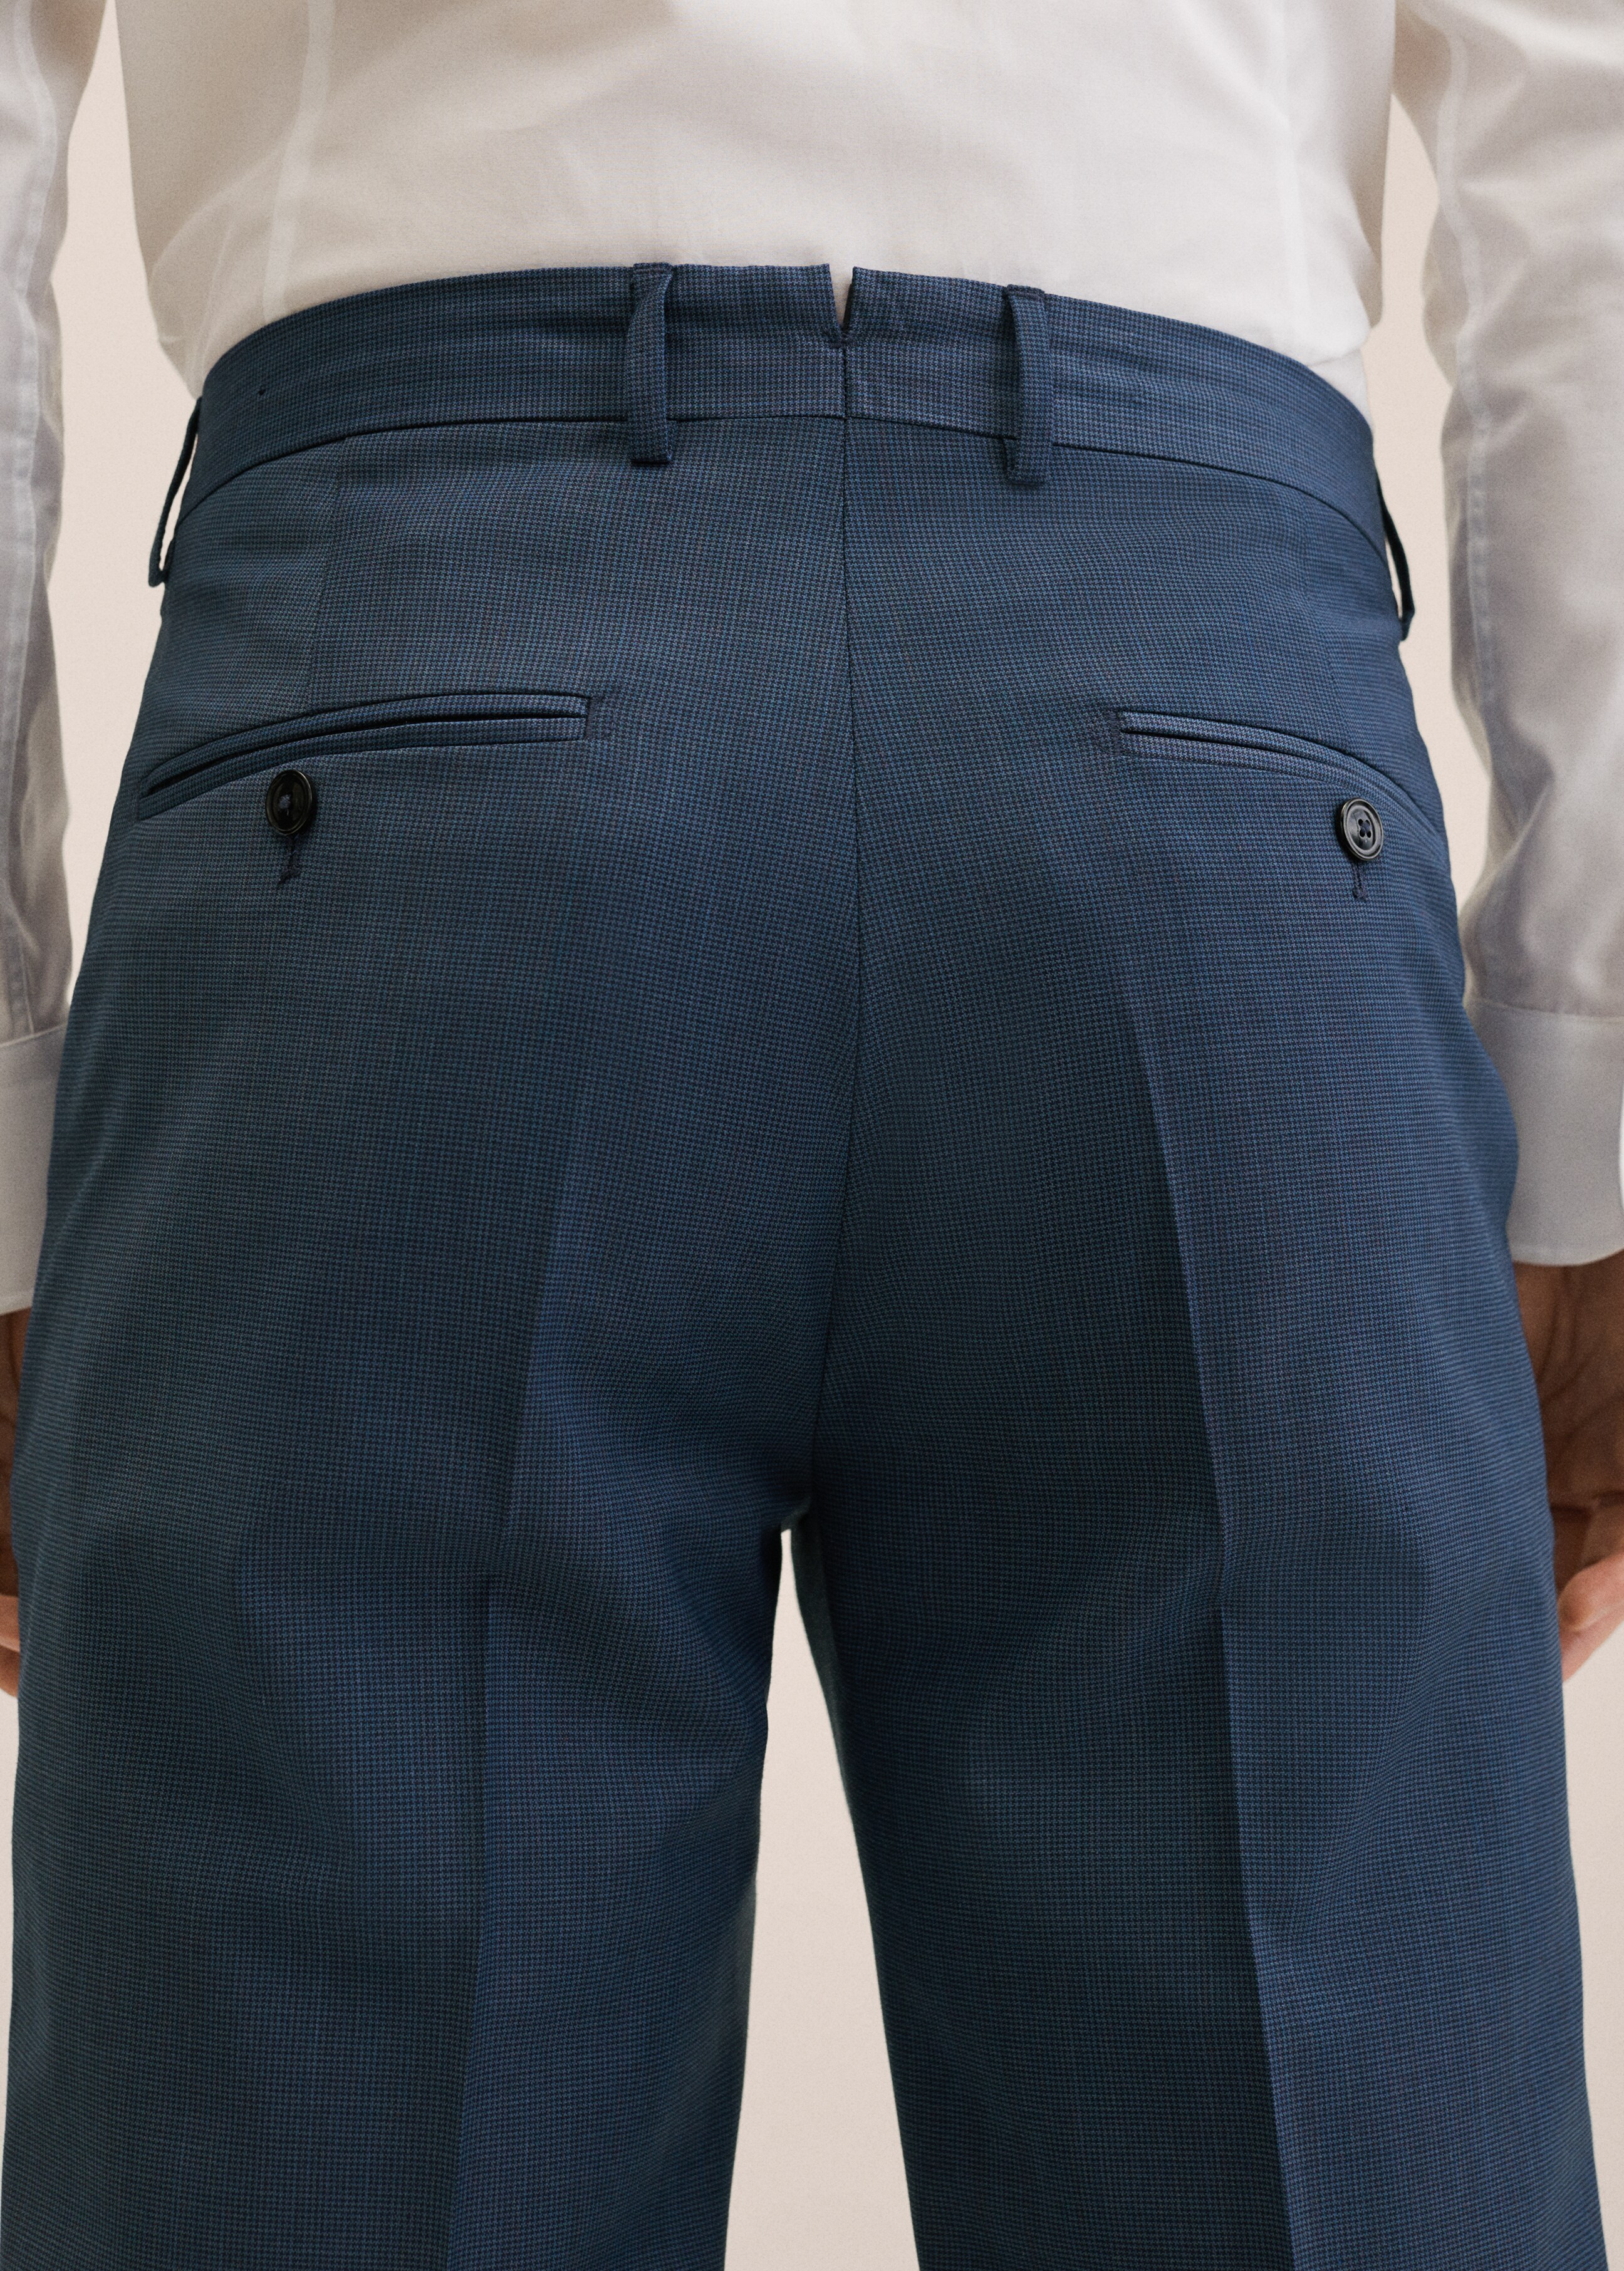 Pantalón traje slim fit lana - Detalle del artículo 3